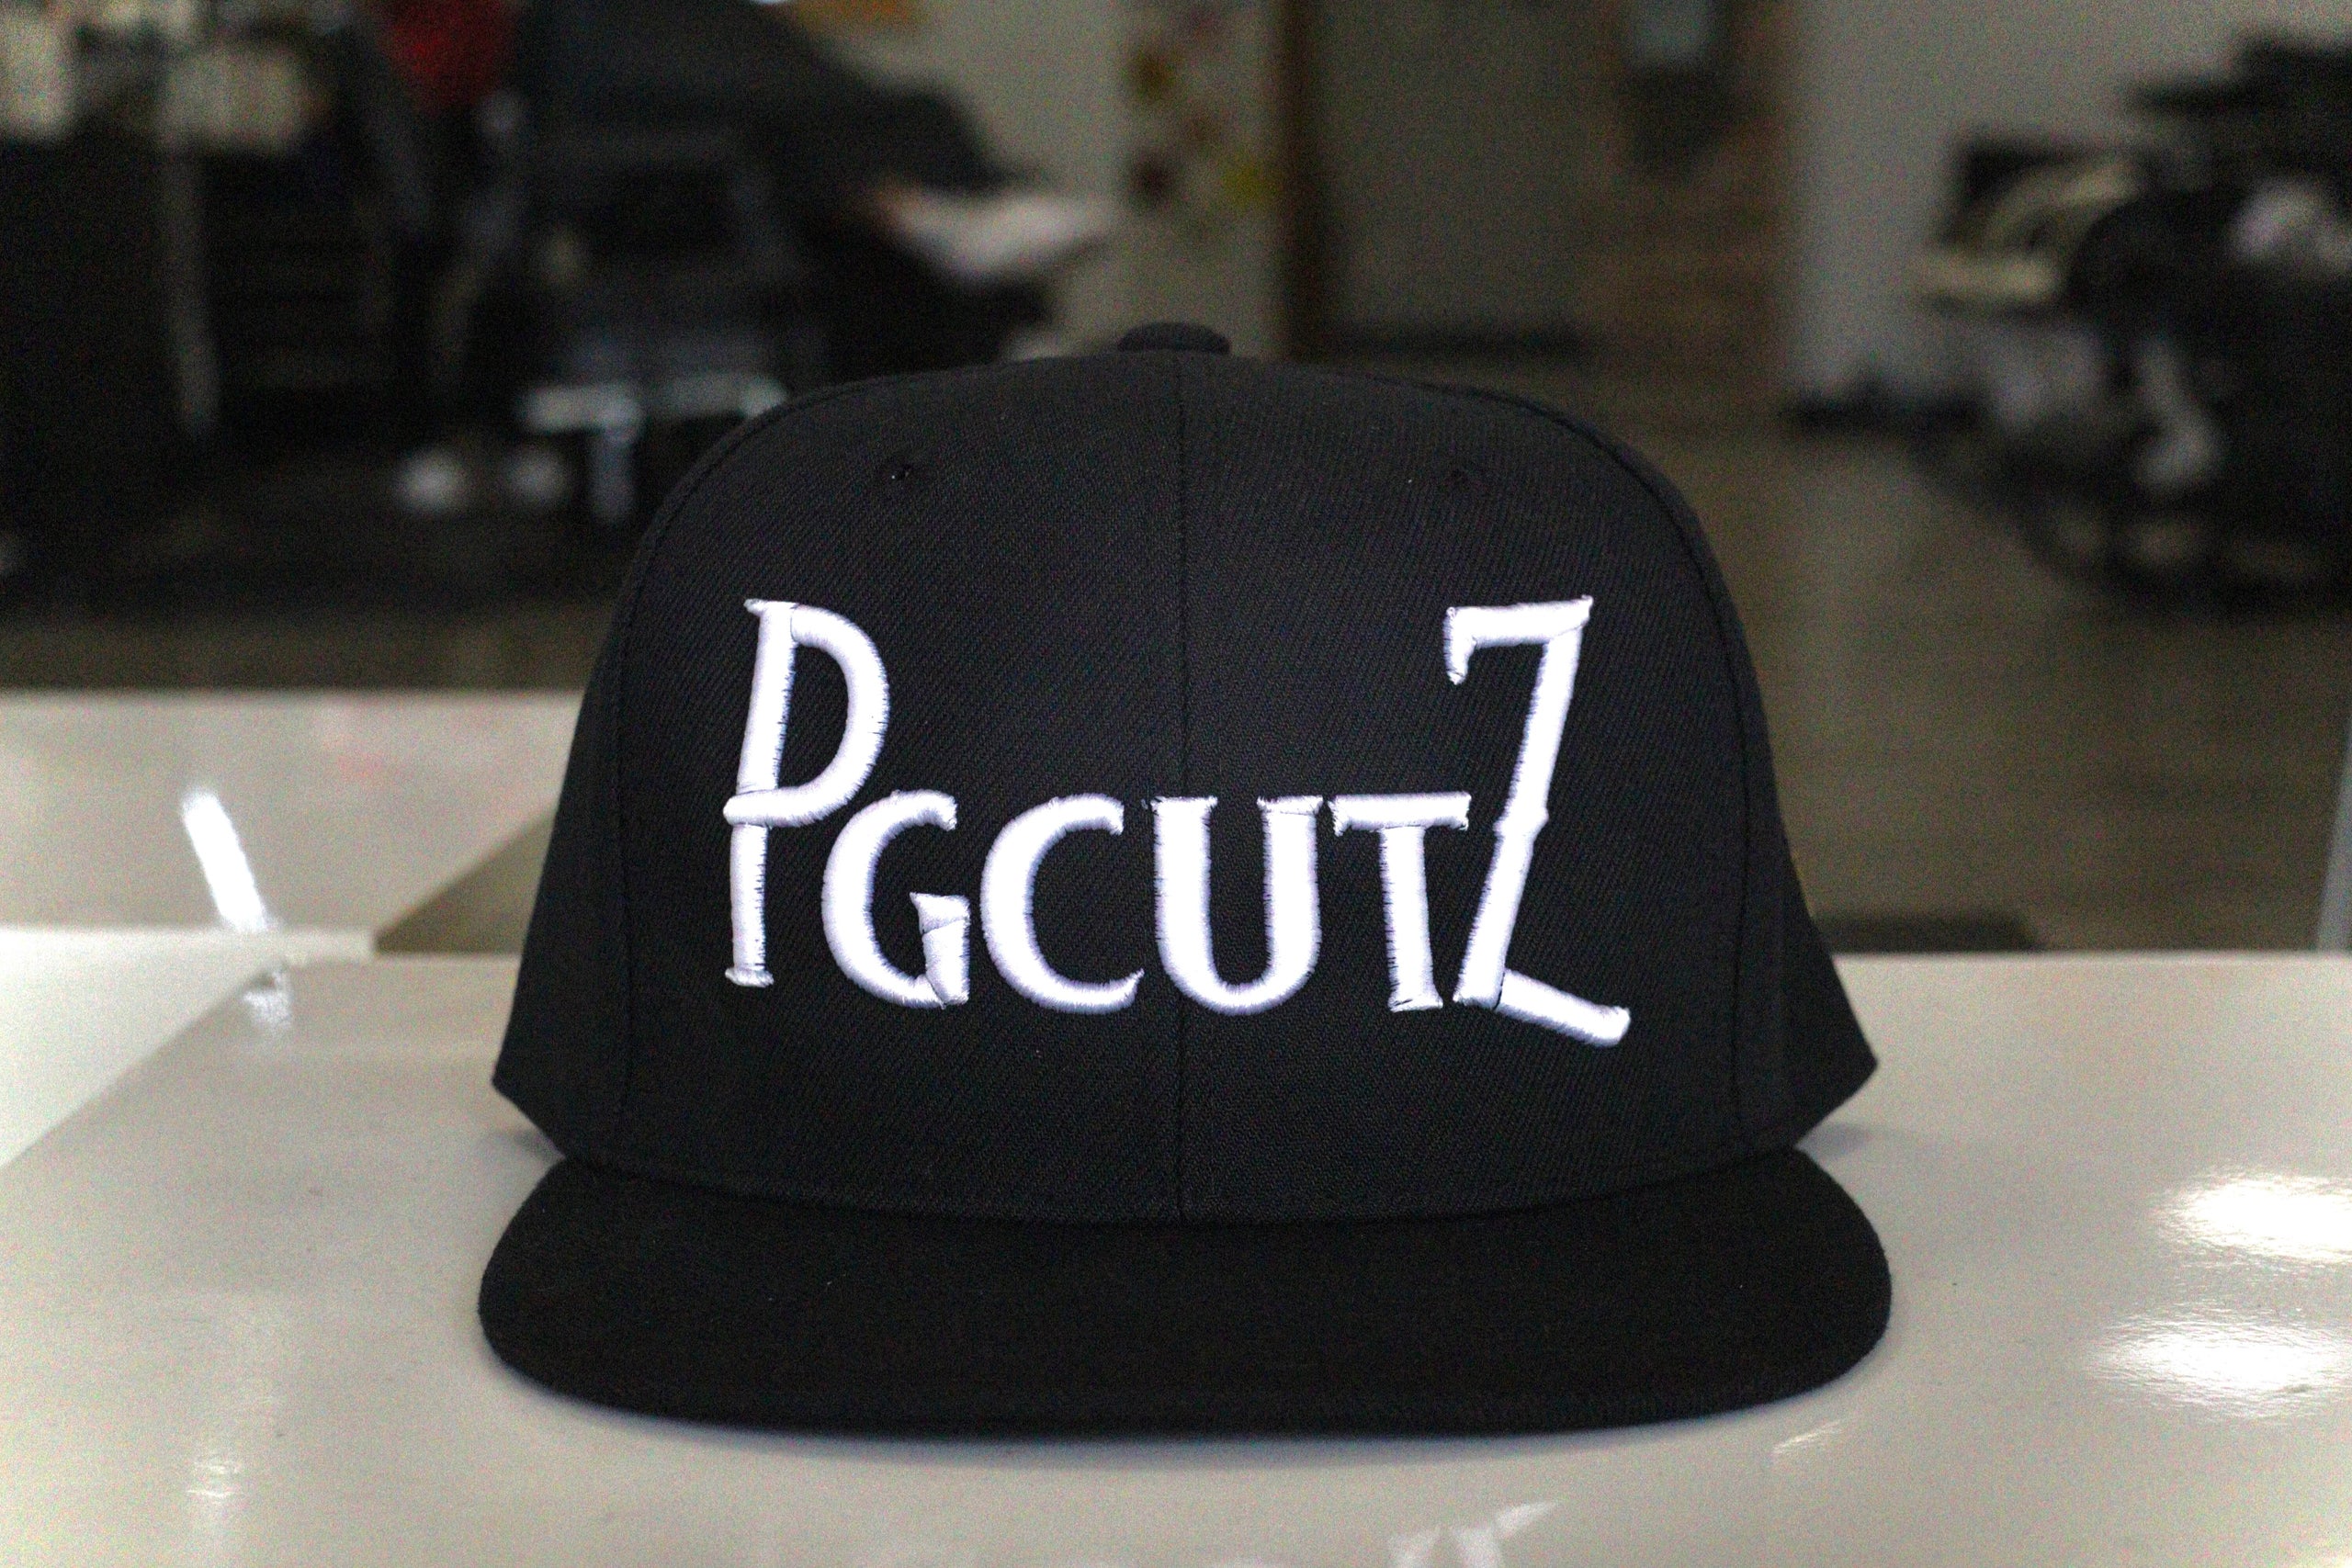 PGCutz | PGCUTZ Hat